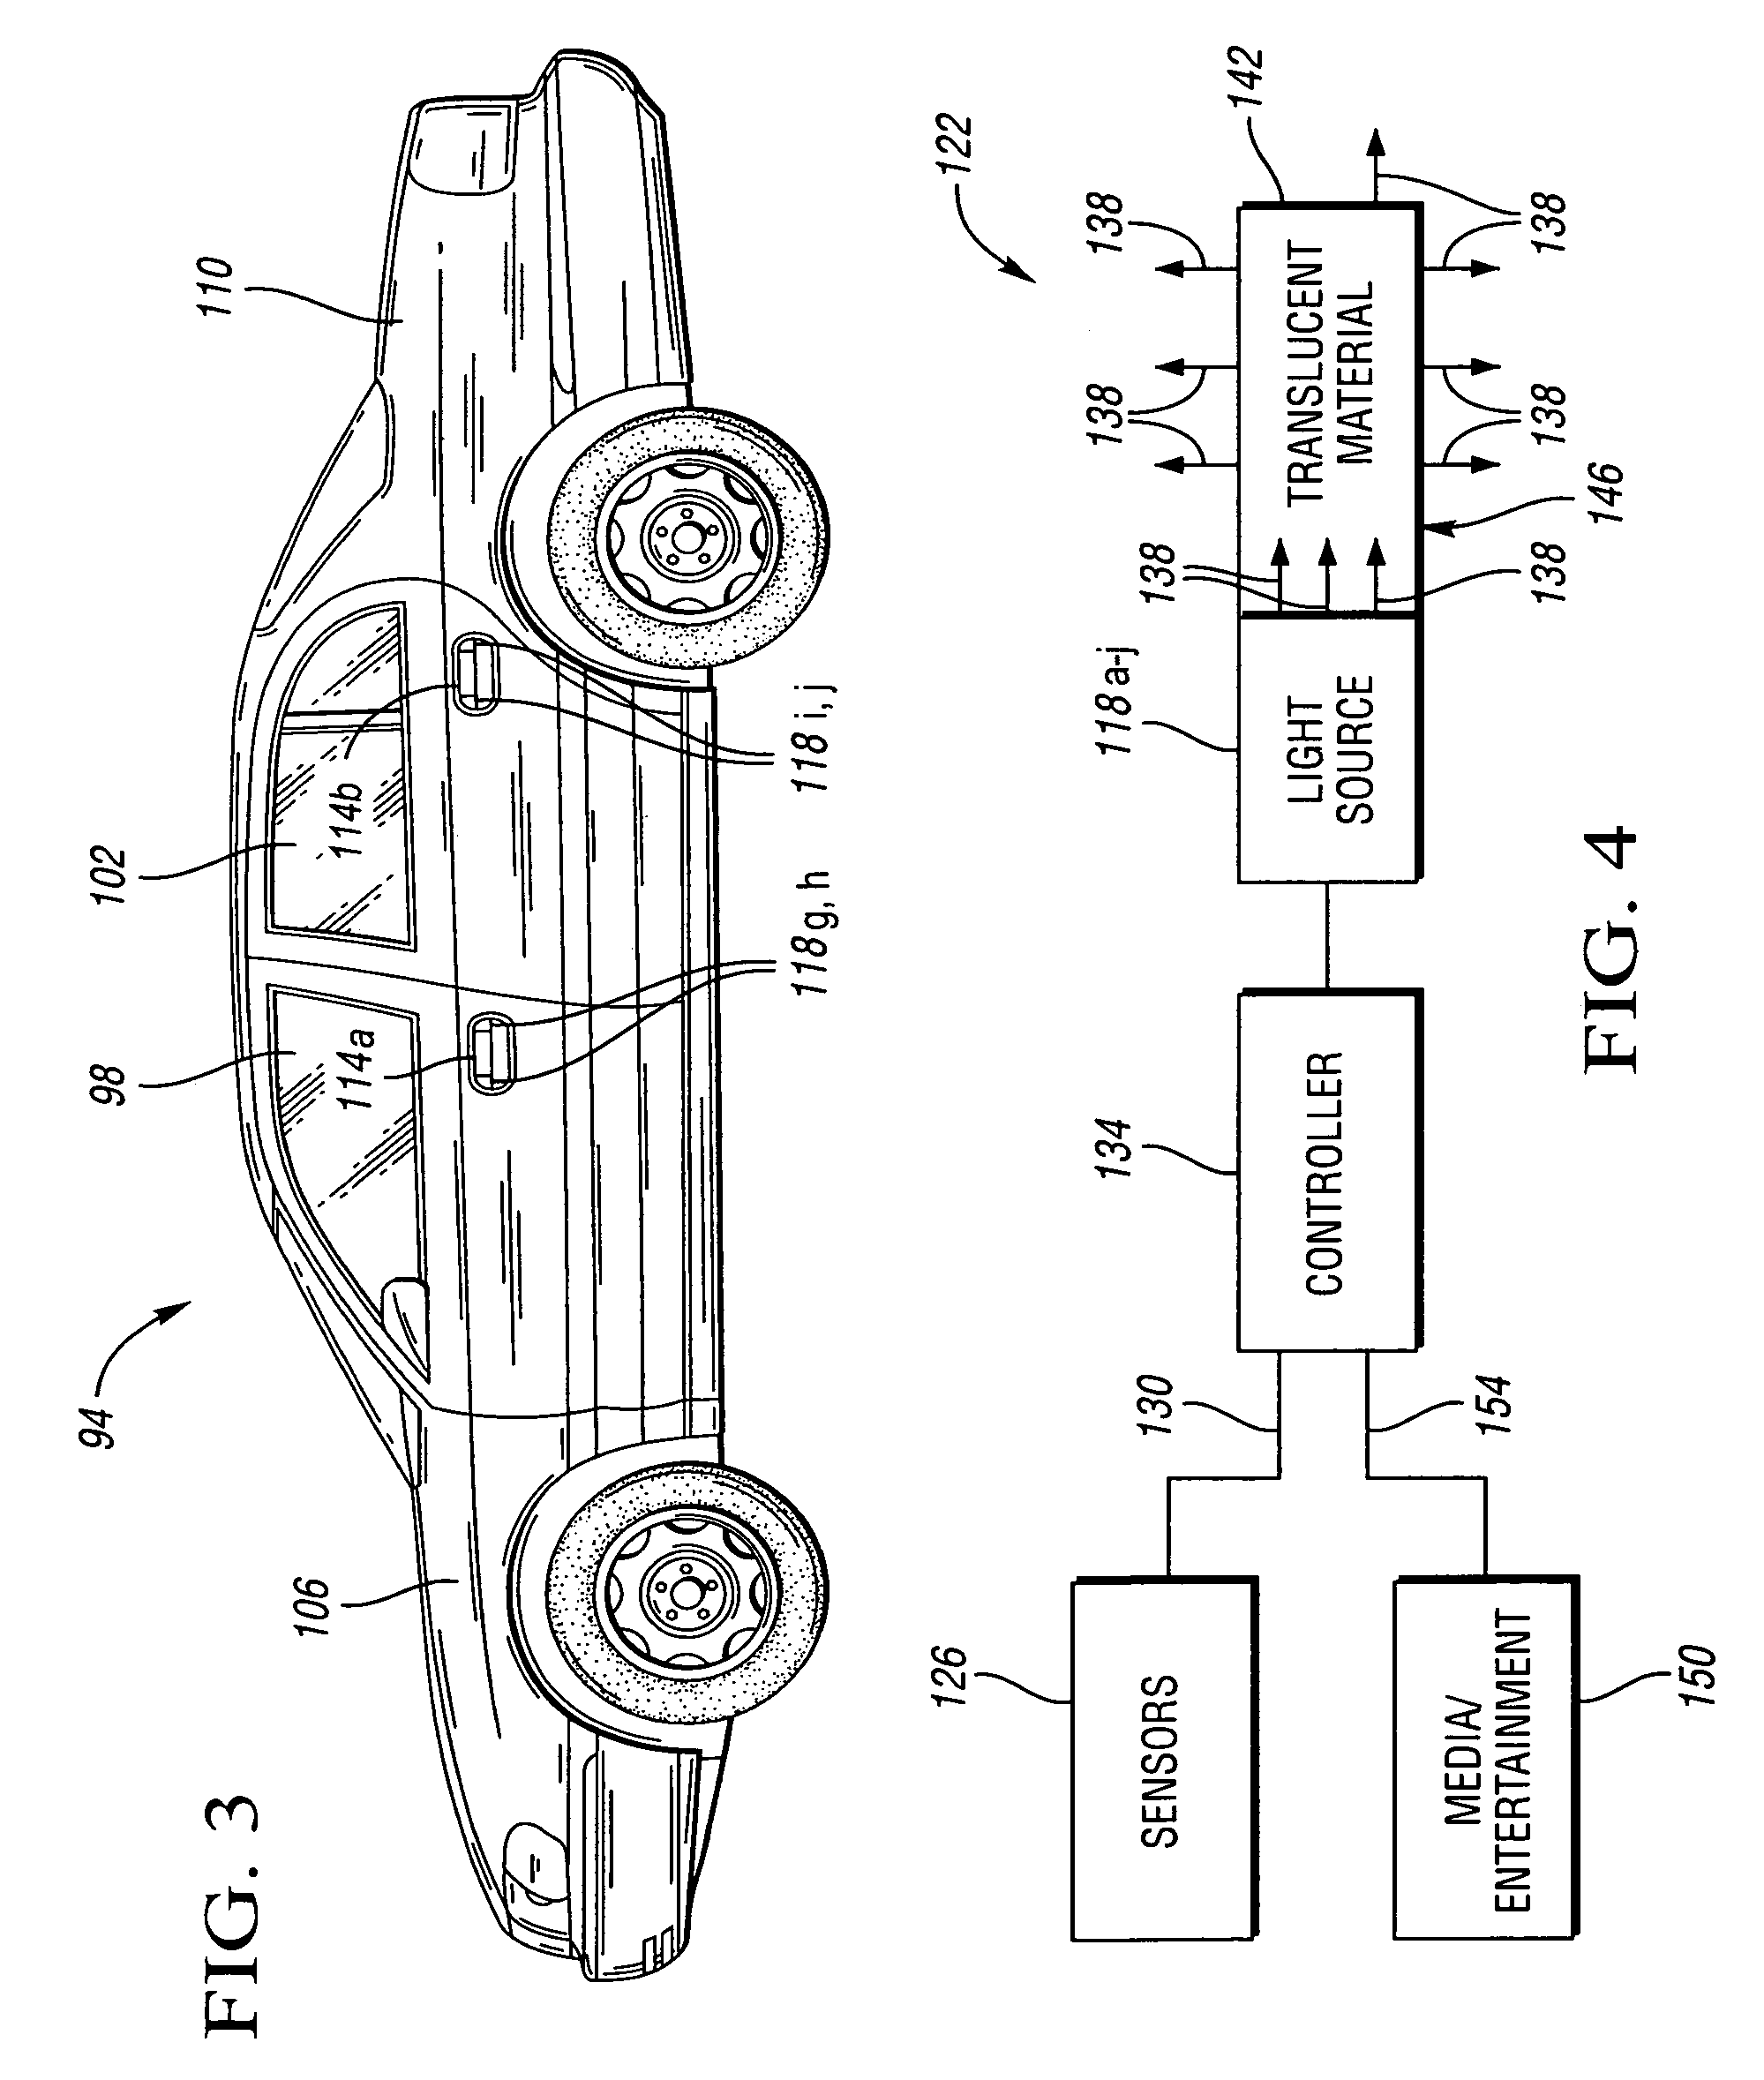 Vehicle illumination system and method